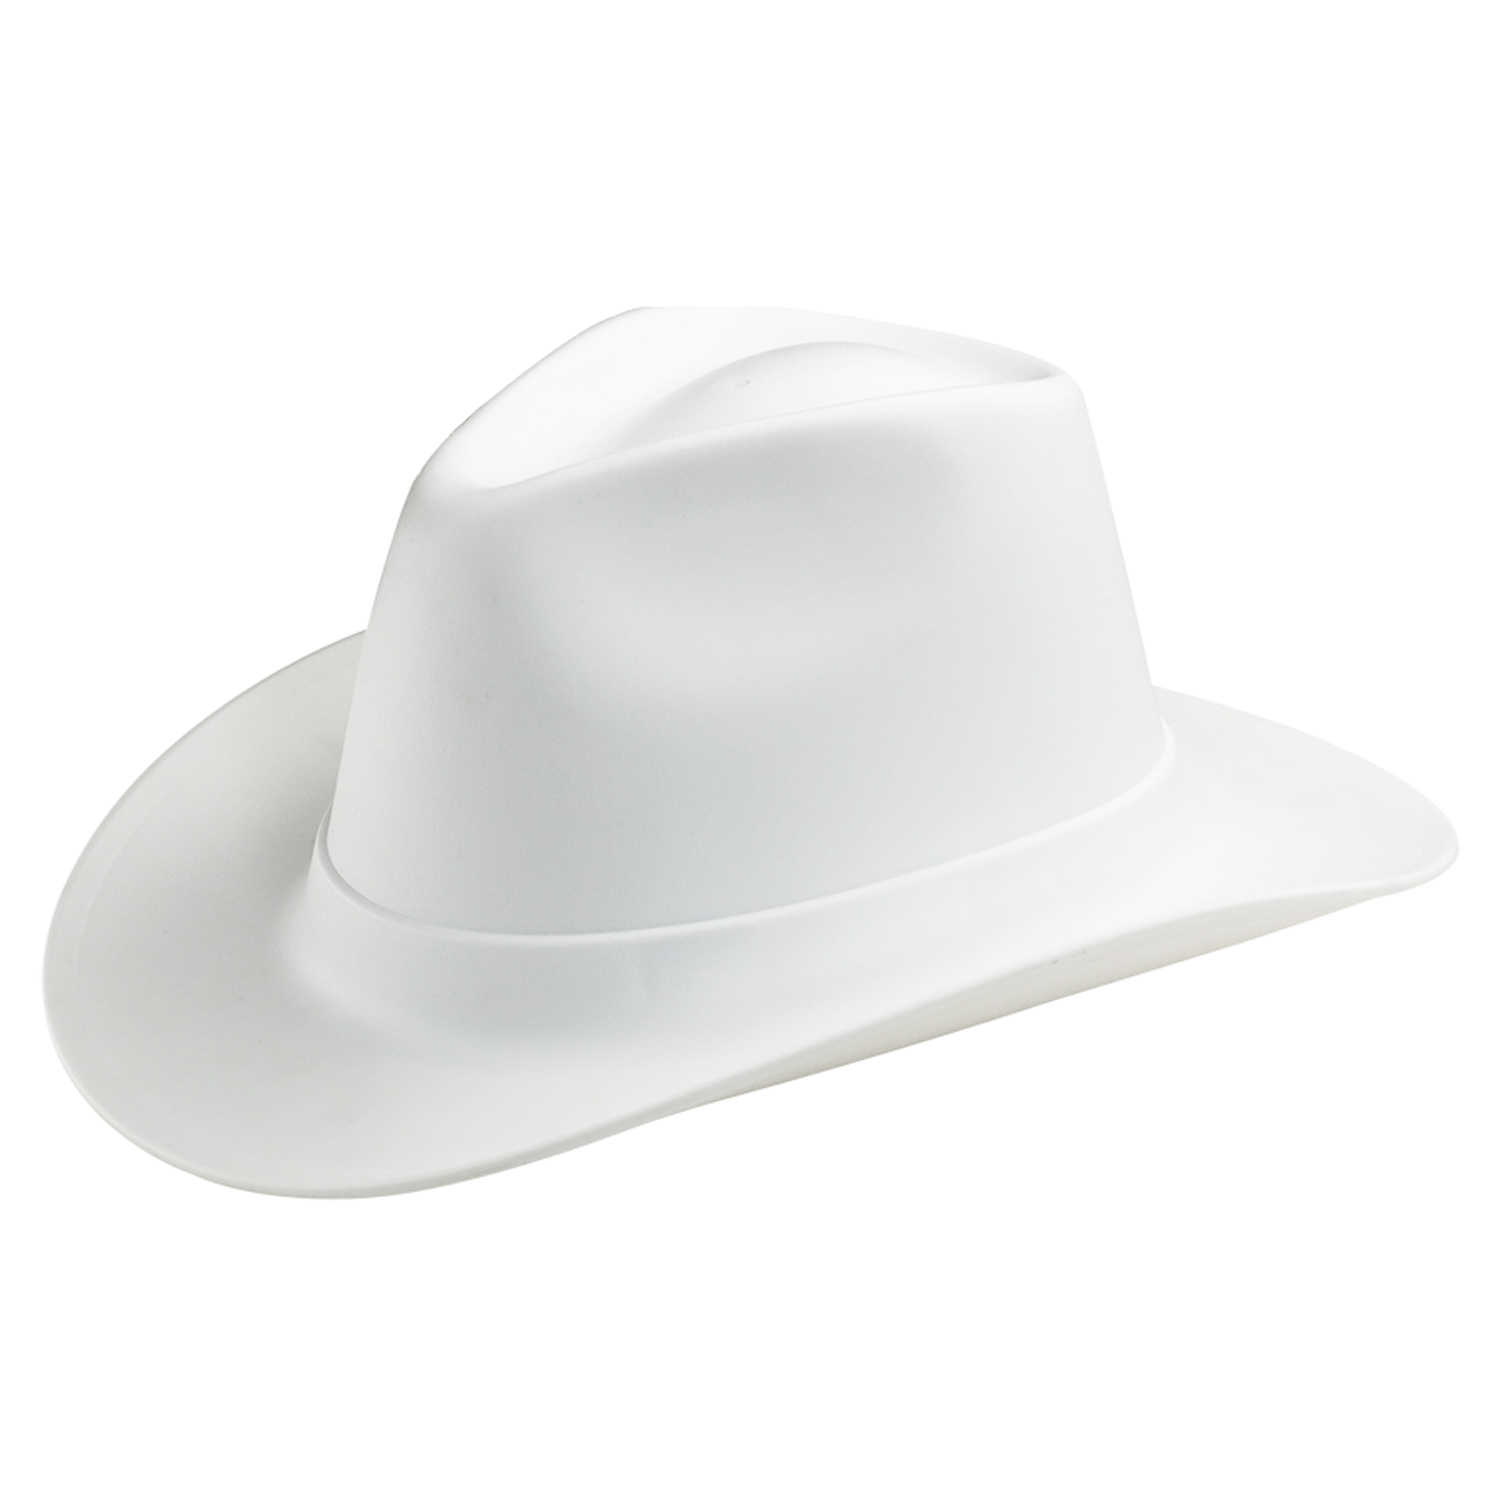 Каска ковбой. Vulcan Cowboy Style hard hat White. Vulcan vcb200-00 Western hard hat, Type 1, class e, Ratchet (6-point), белый. Каска защитная ковбойская шляпа. Vulka vcb100-00 hard hat строительная.